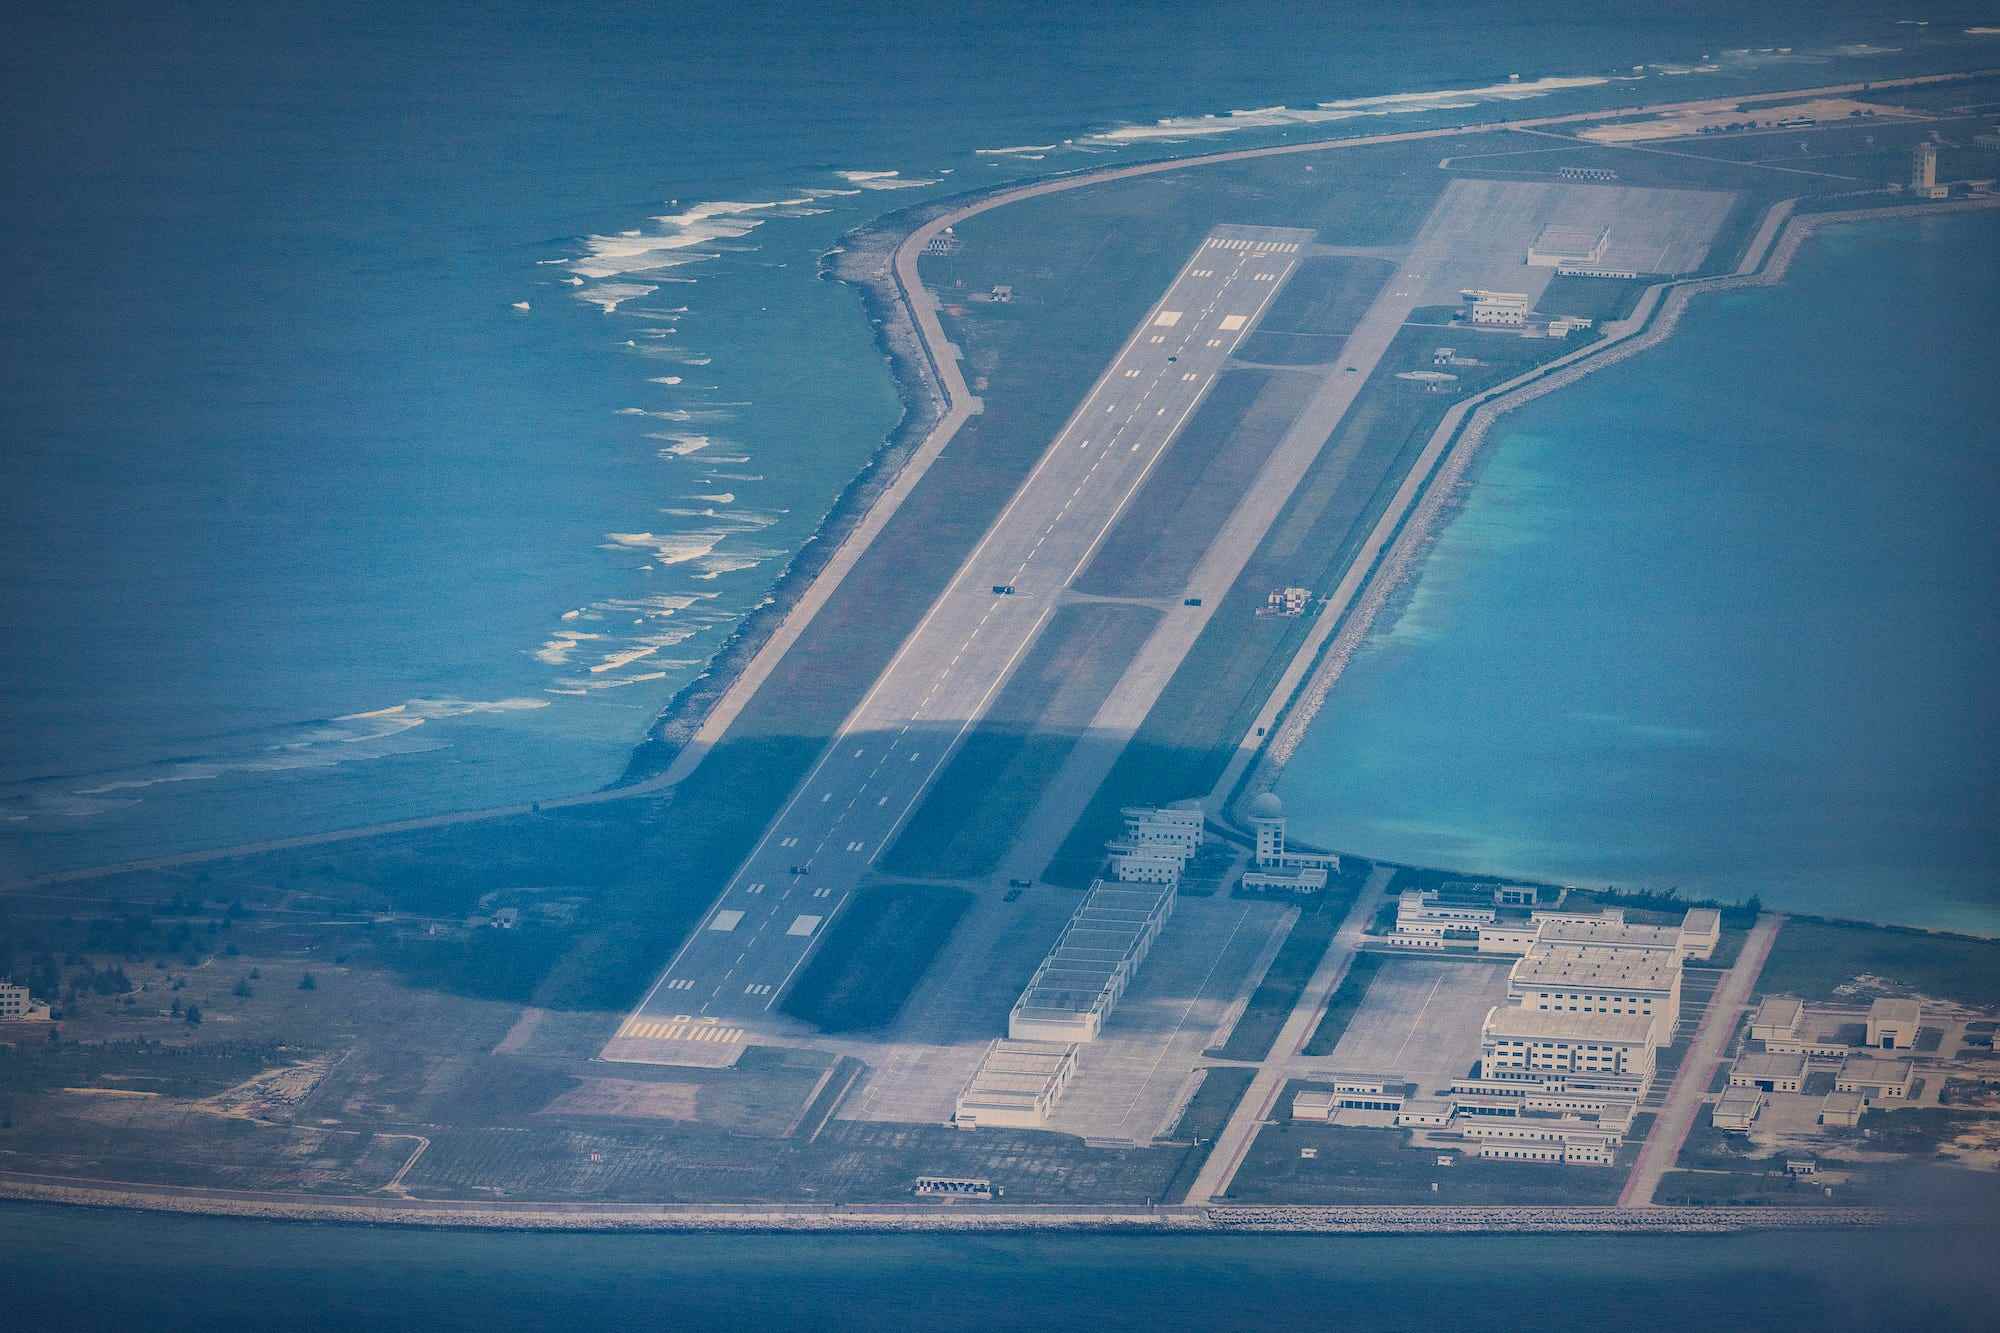 Militärstützpunkt am Subi-Riff im Südchinesischen Meer der Spratly-Inseln